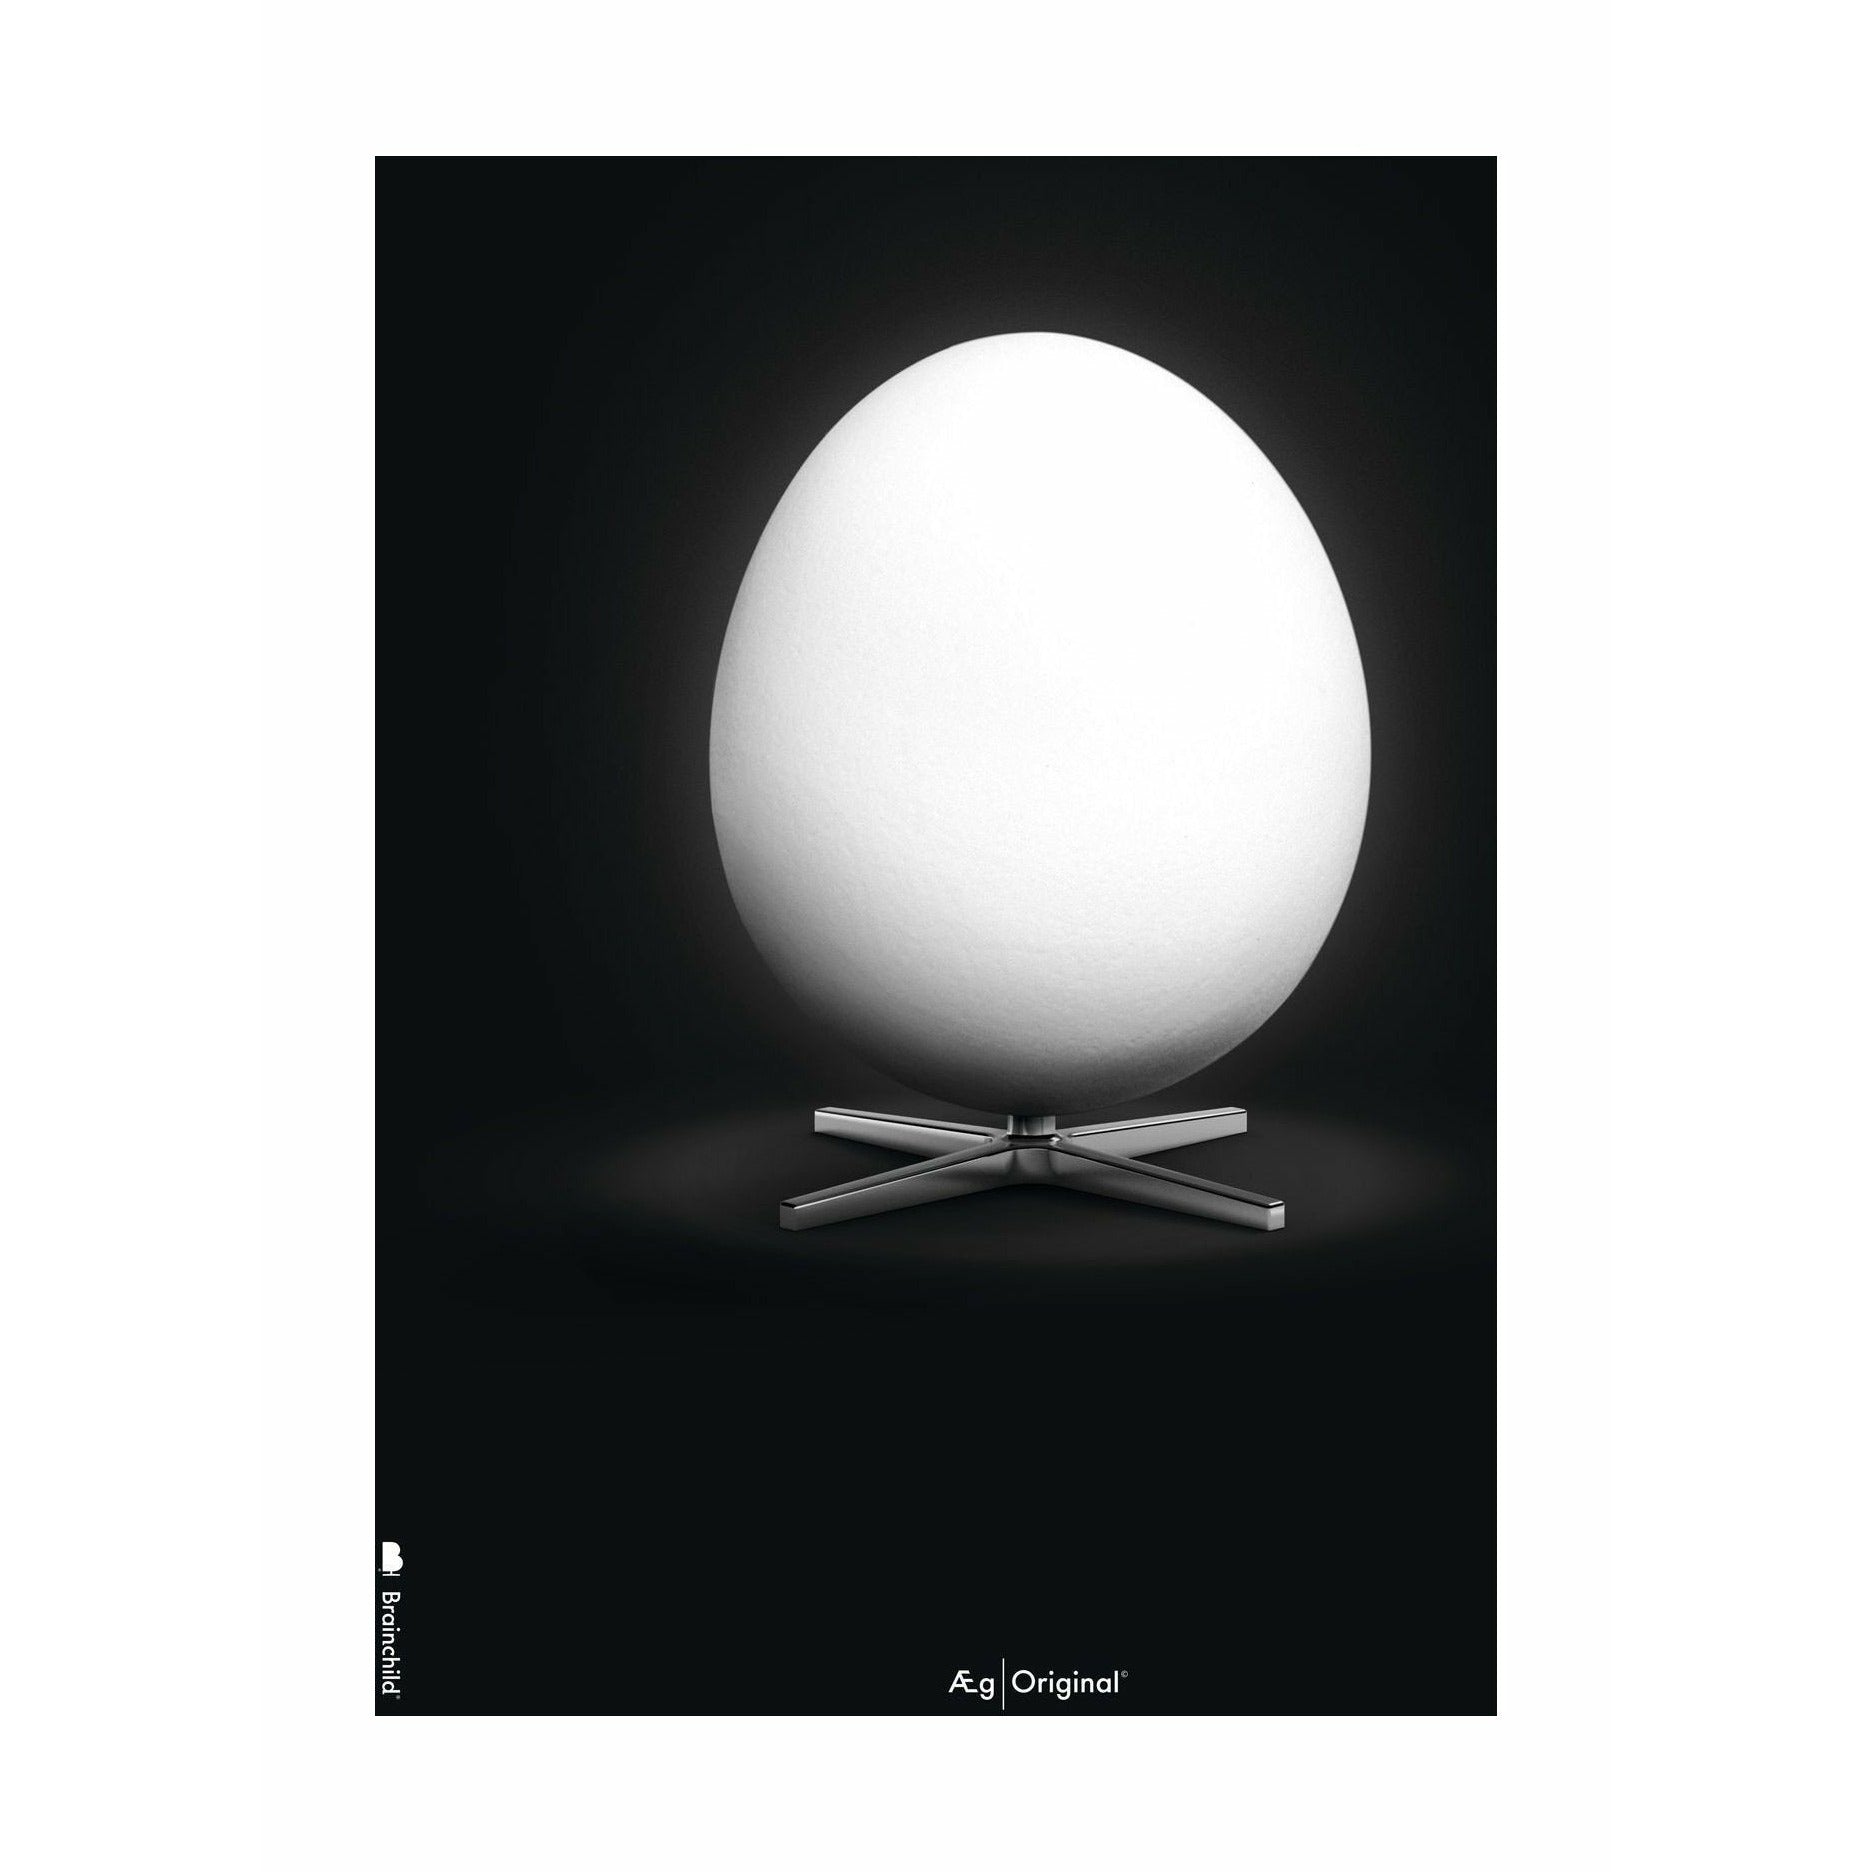 Klasyczny plakat jaja bez ramy 50 x 70 cm, czarne tło